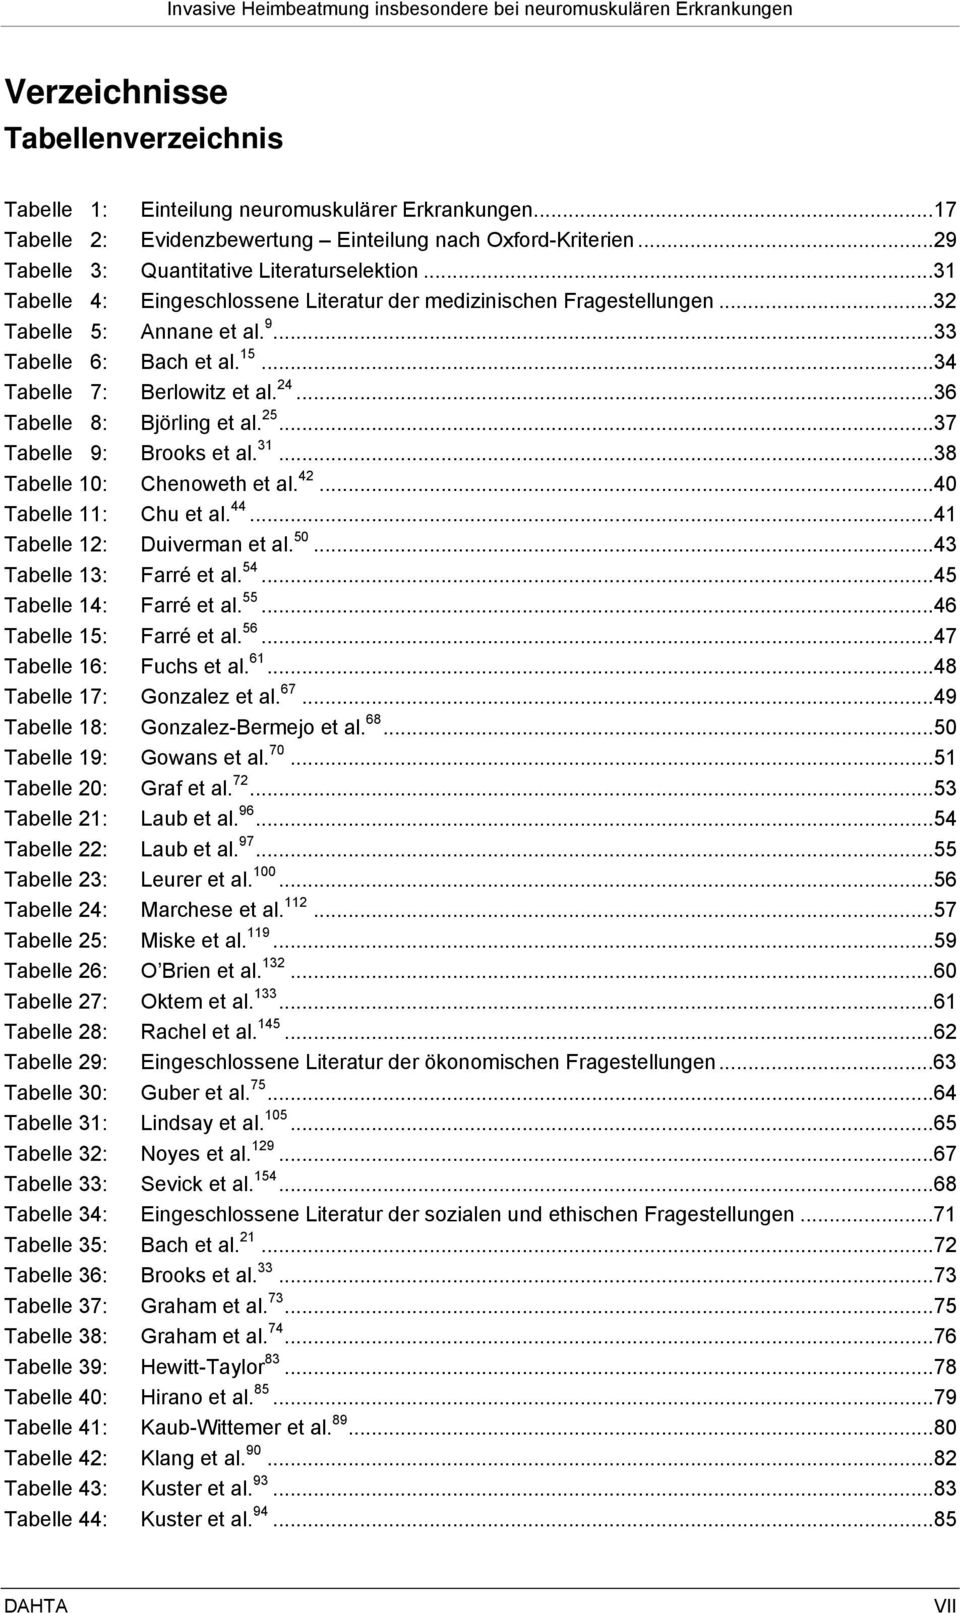 ..36 Tabelle 8: Björling et al. 25...37 Tabelle 9: Brooks et al. 31...38 Tabelle 10: Chenoweth et al. 42...40 Tabelle 11: Chu et al. 44...41 Tabelle 12: Duiverman et al. 50...43 Tabelle 13: Farré et al.